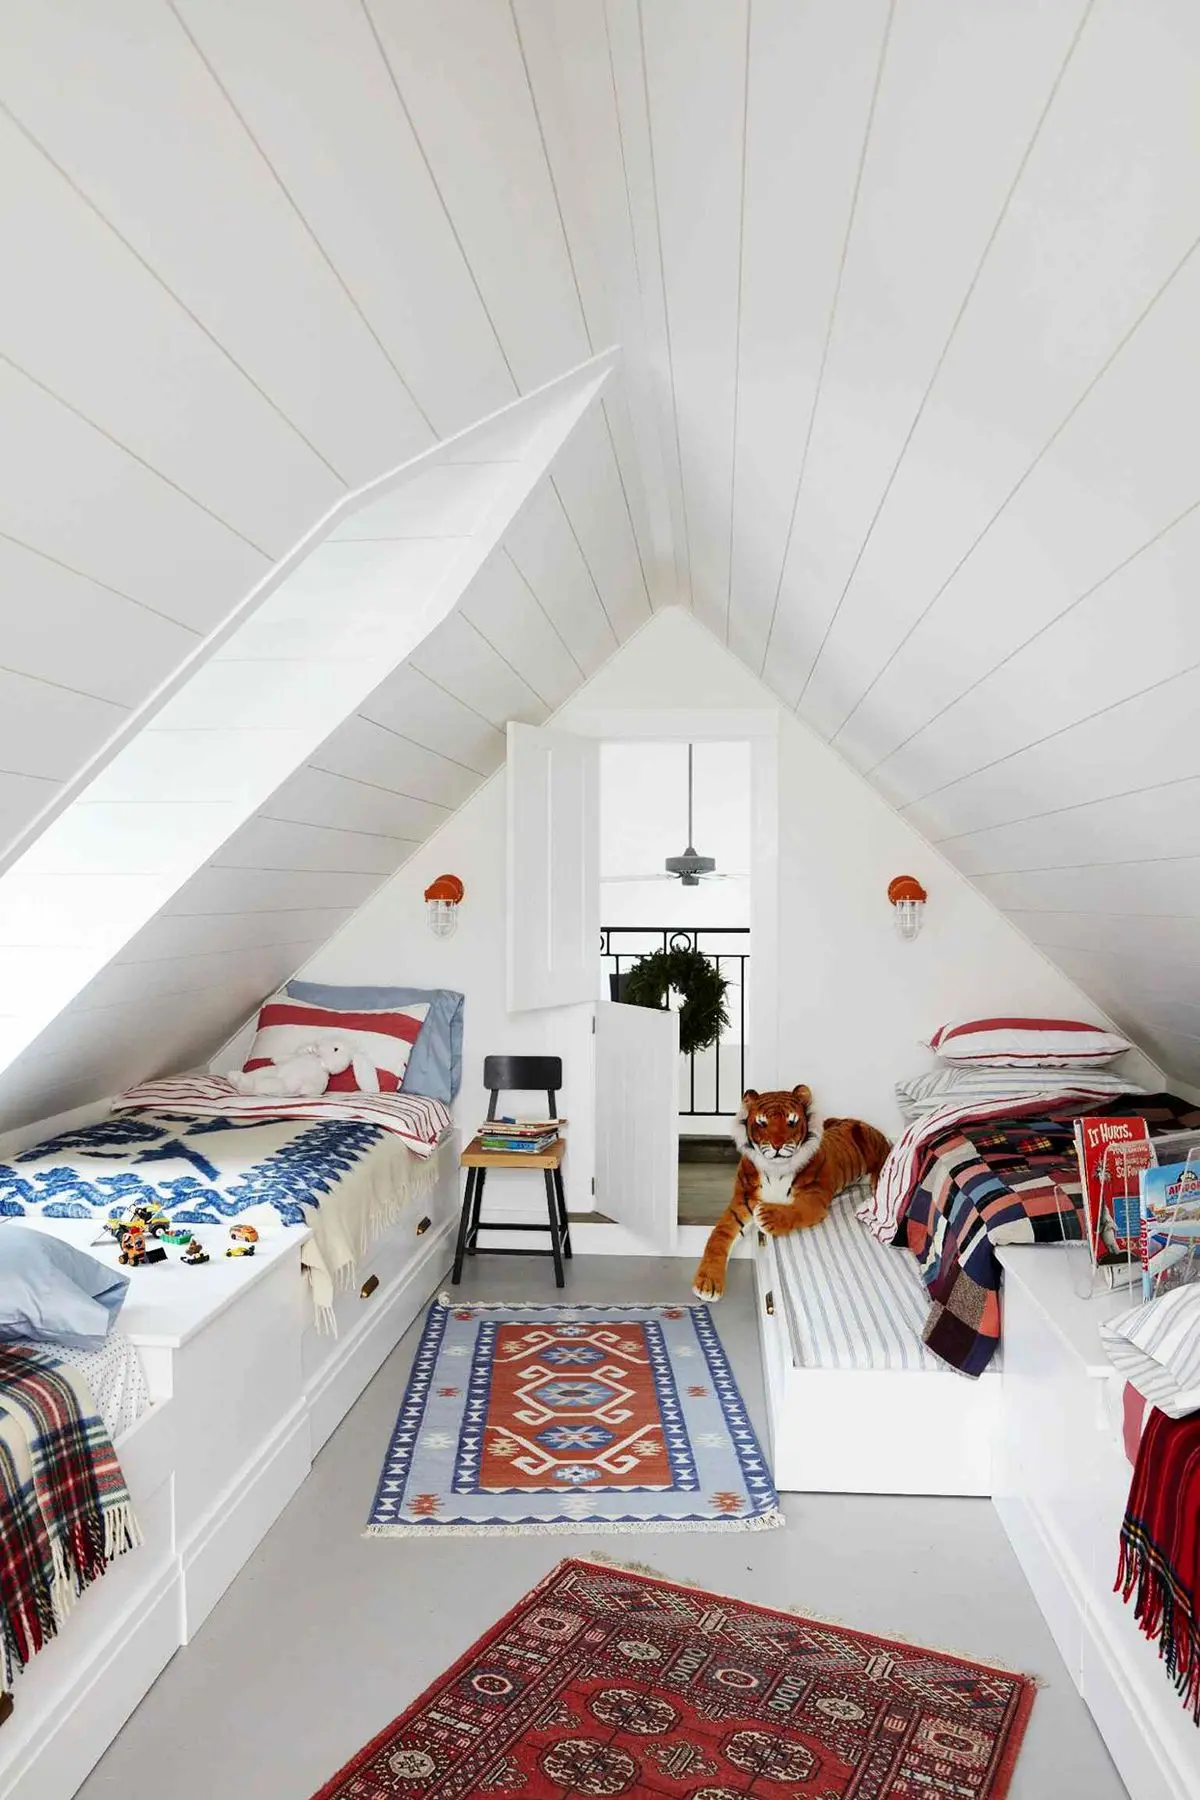 attic-loft-farmhouse-built-in-bunks-trundle-beds-c075ad67-5c78e61235b64a639aff3a5de7075a0d